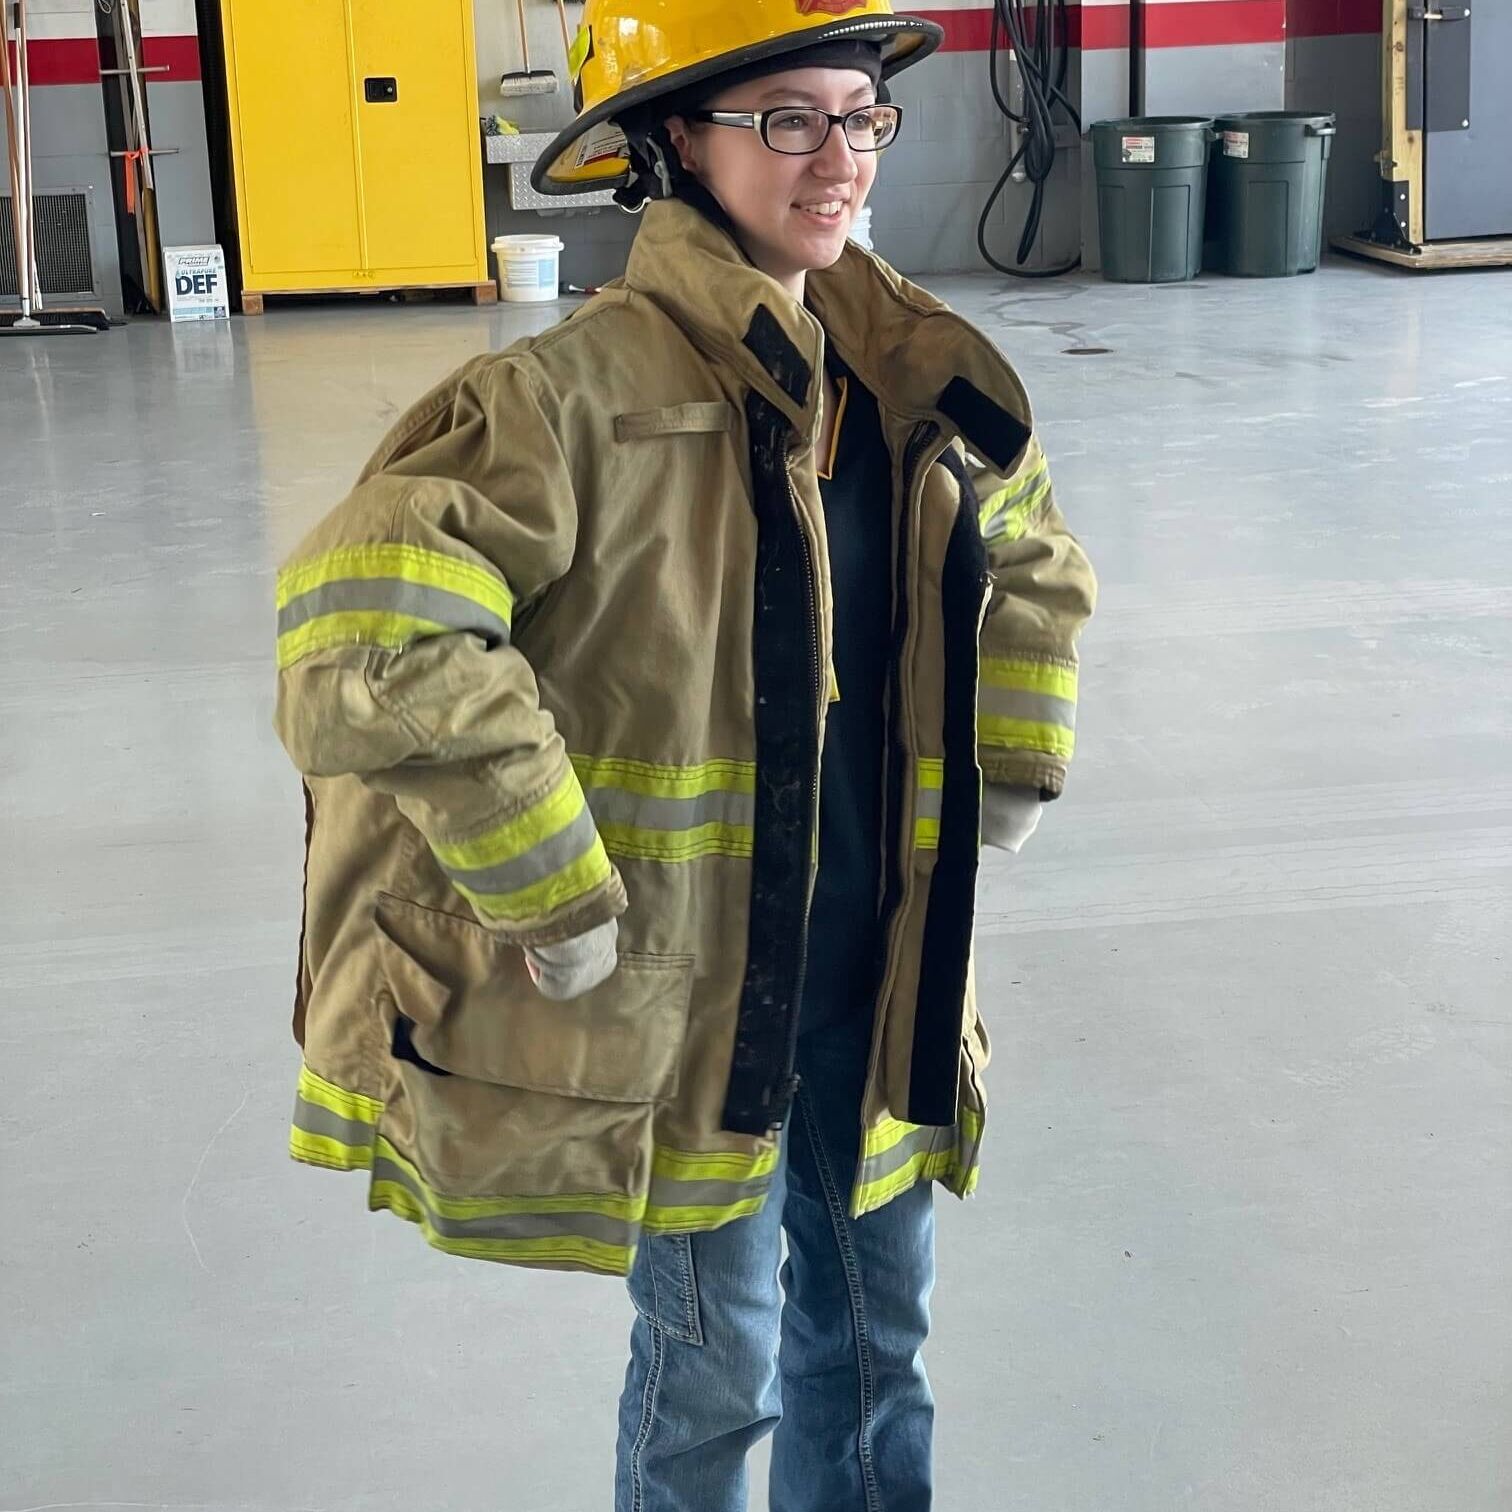 woman in firefighter uniform